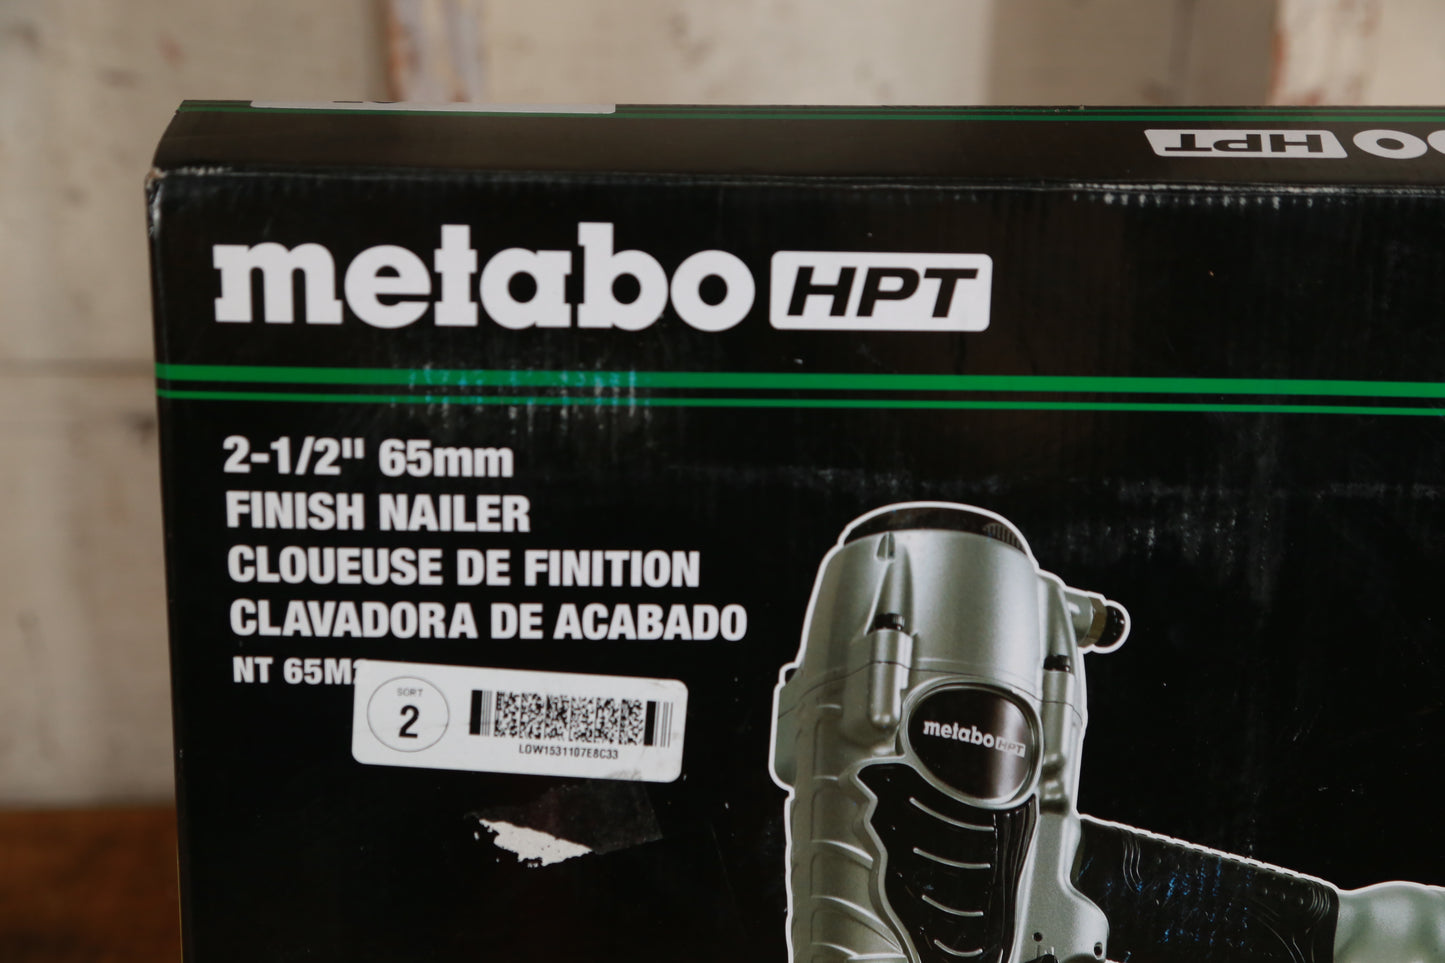 Metabo HPT 16-Gauge-Degree Corded Finish Nailer